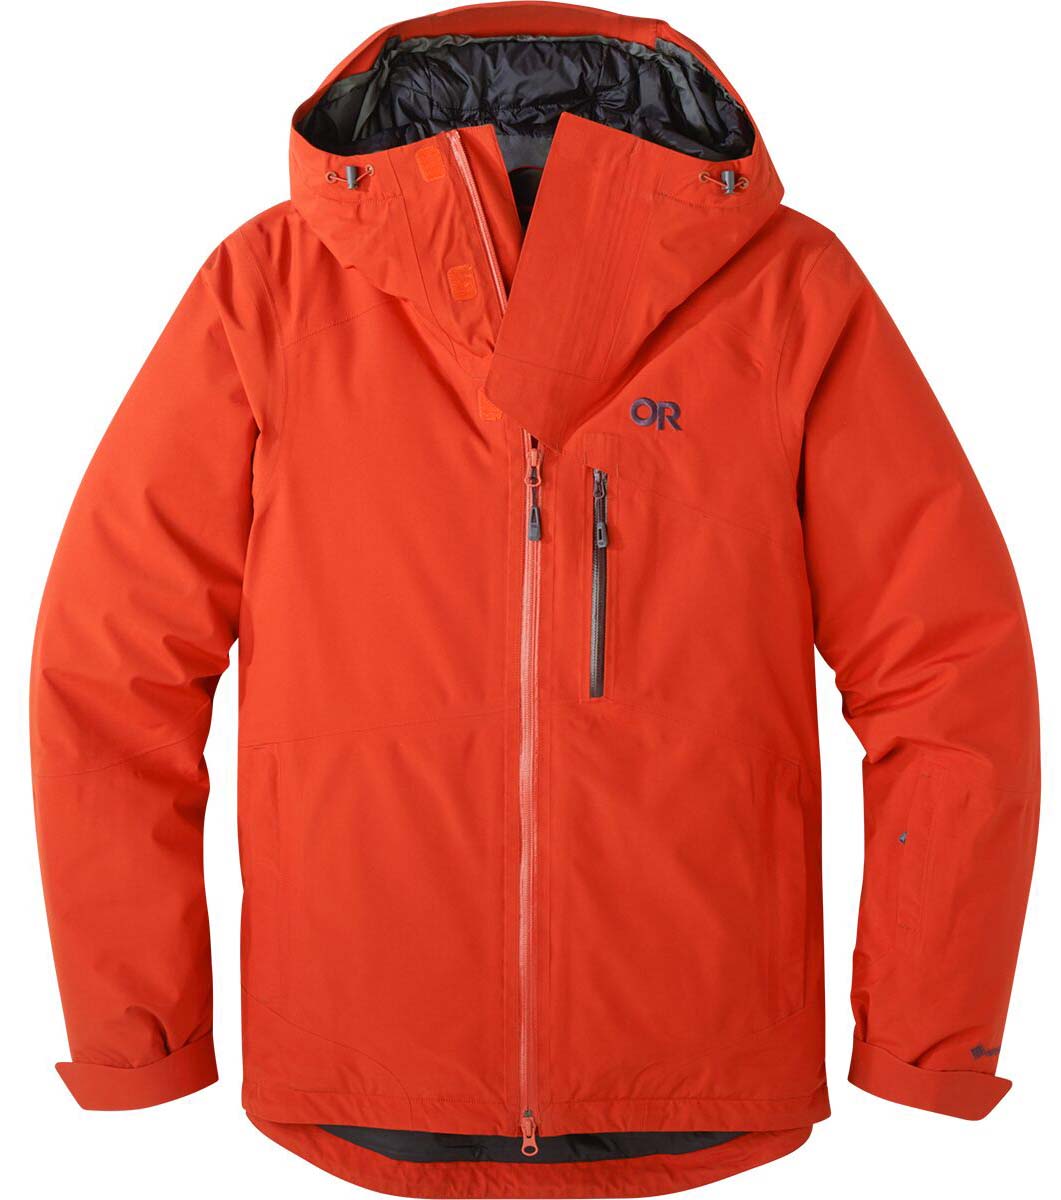 Outdoor Research Tungsten ski jacket